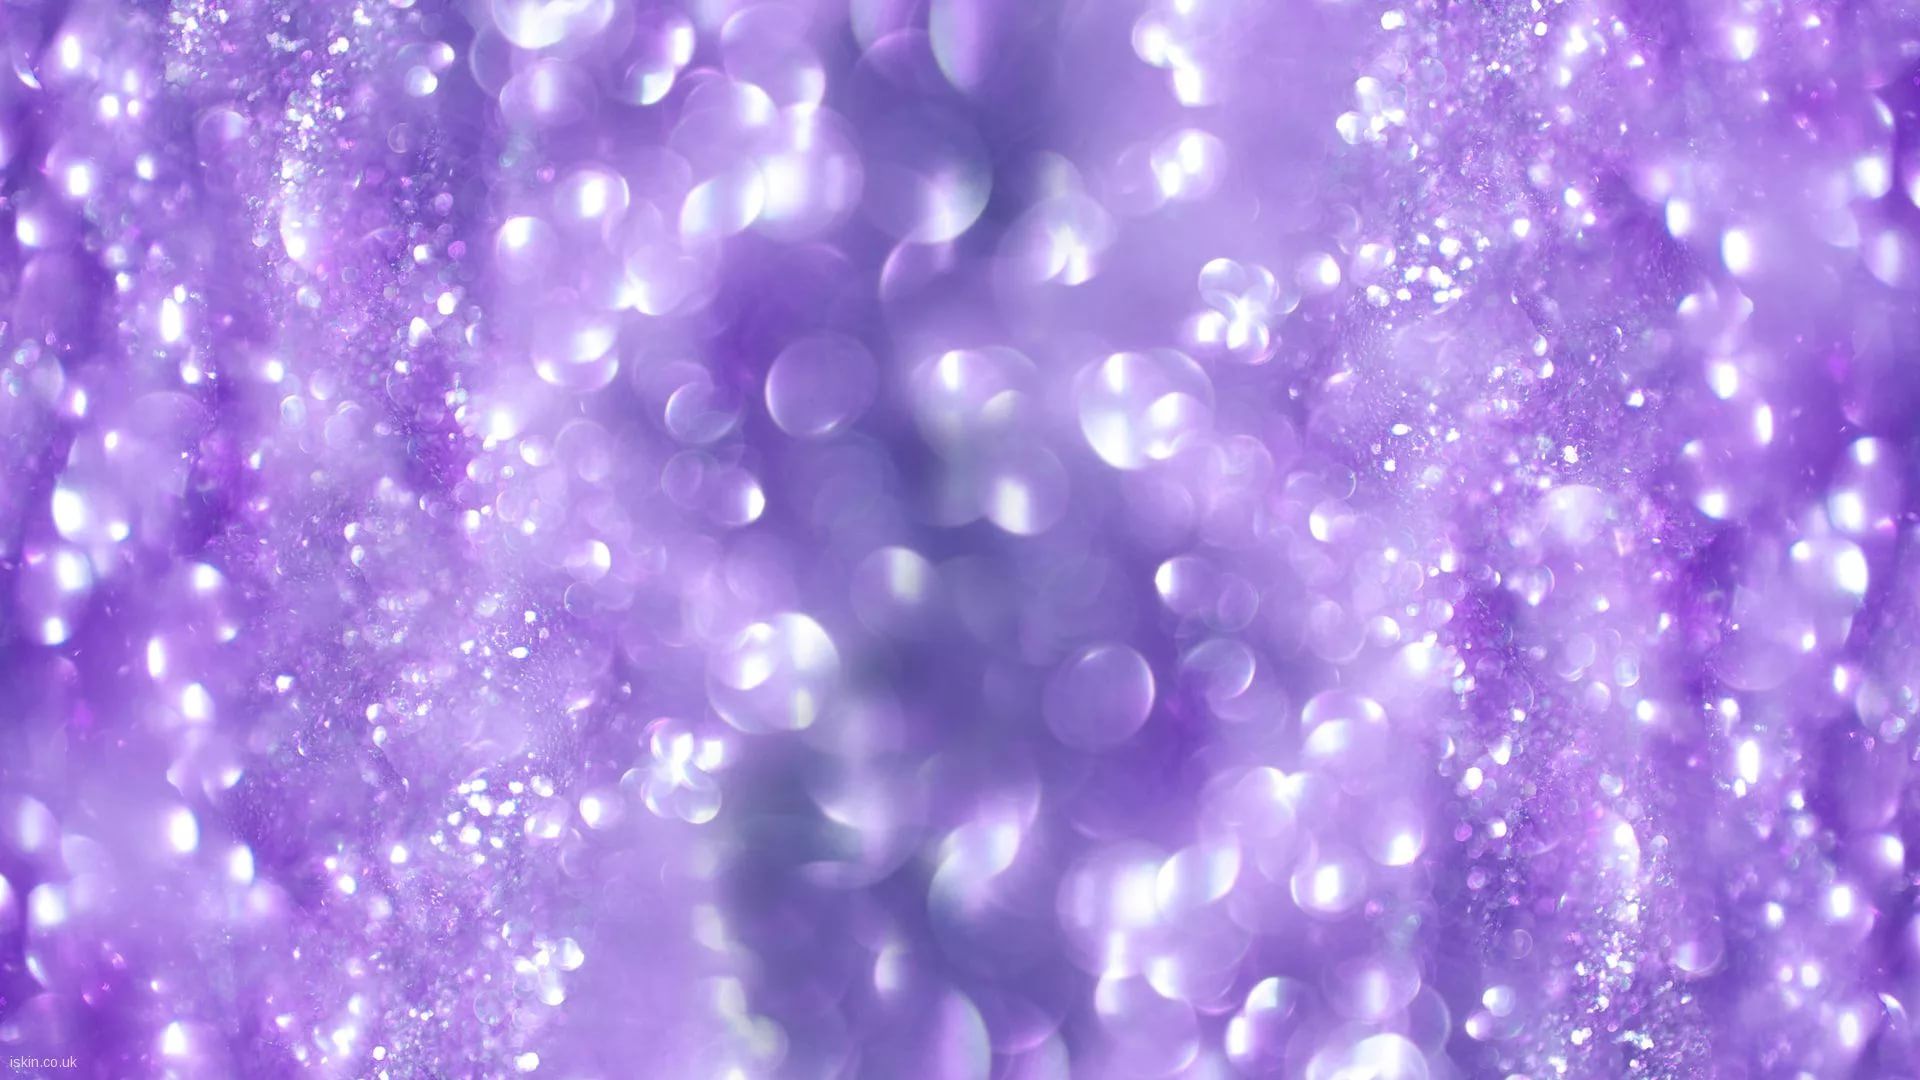 Glitter Hd Desktop Wallpaper - Hd Purple Sparkle Background - HD Wallpaper 